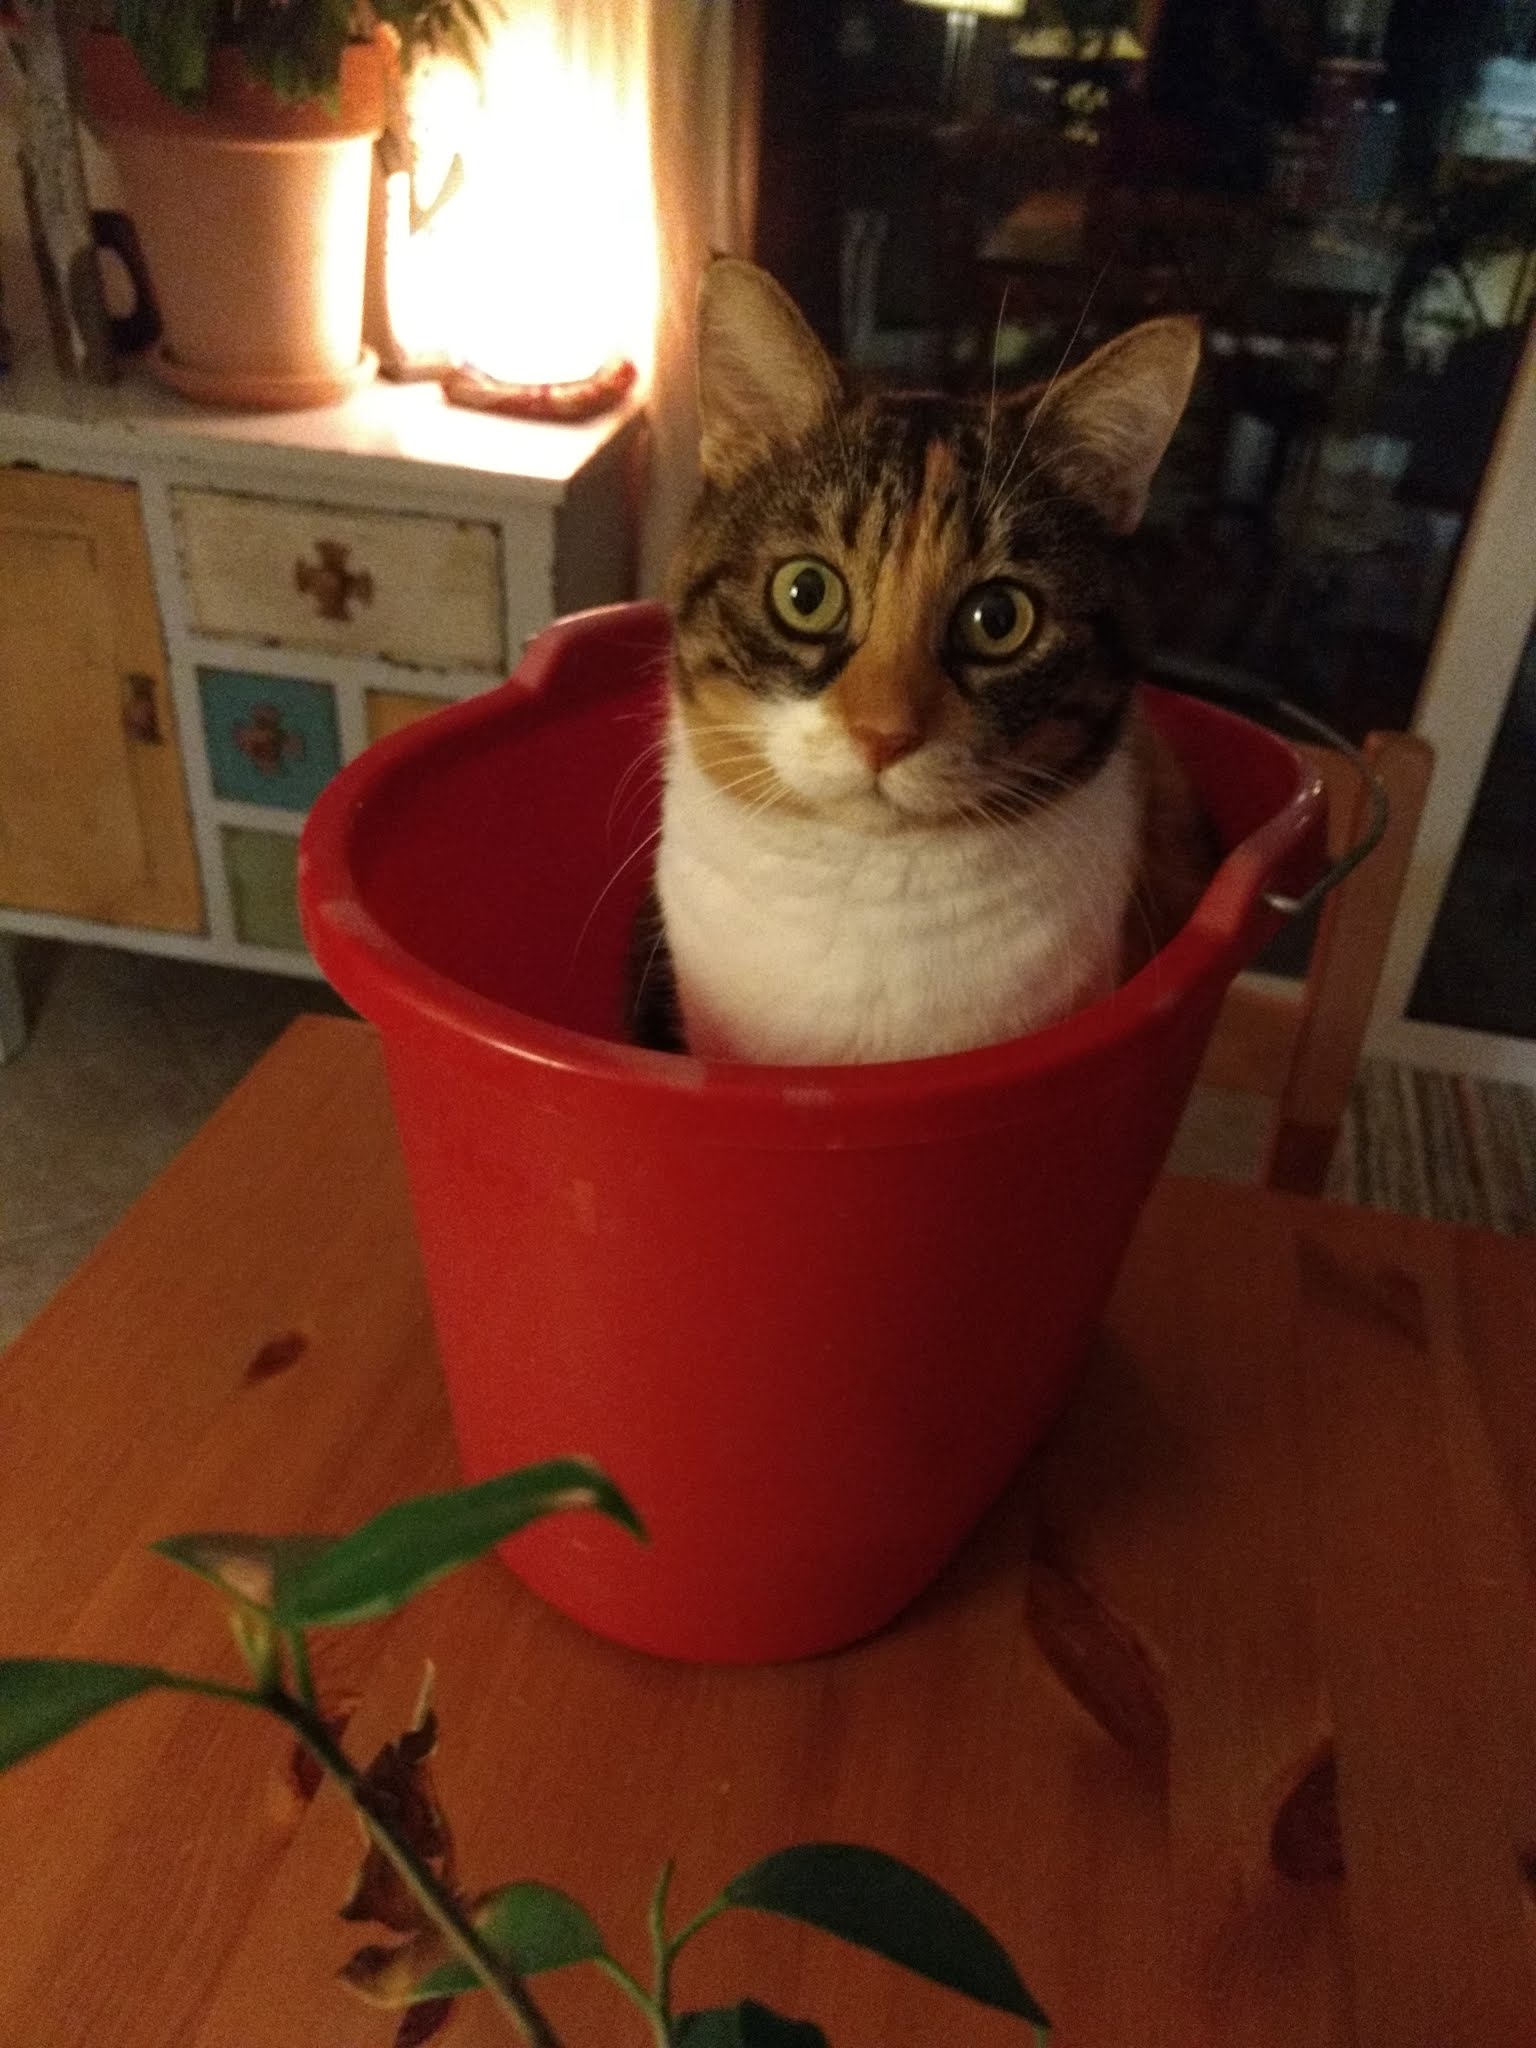 My cat in a bucket